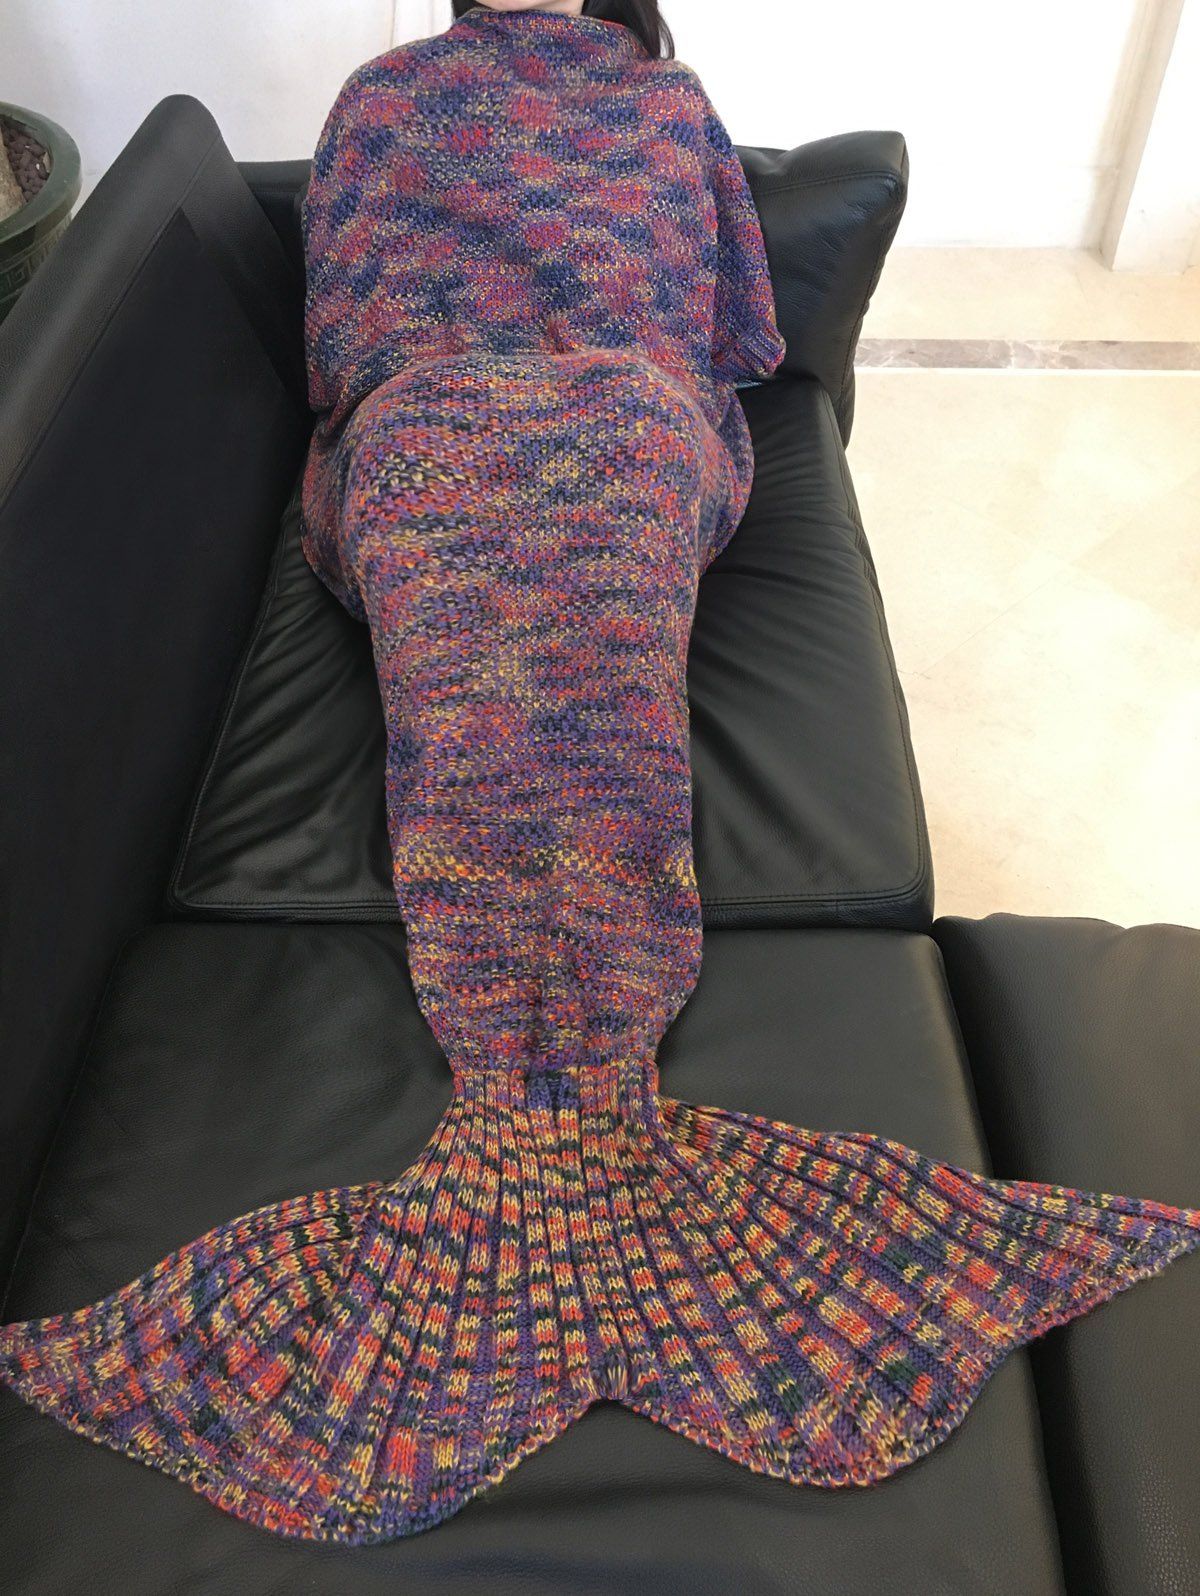 Chic Qualité Colorful Laine Warmth Imprimé Tricoté Tail Mermaid Conception Blanket - Pourpre 